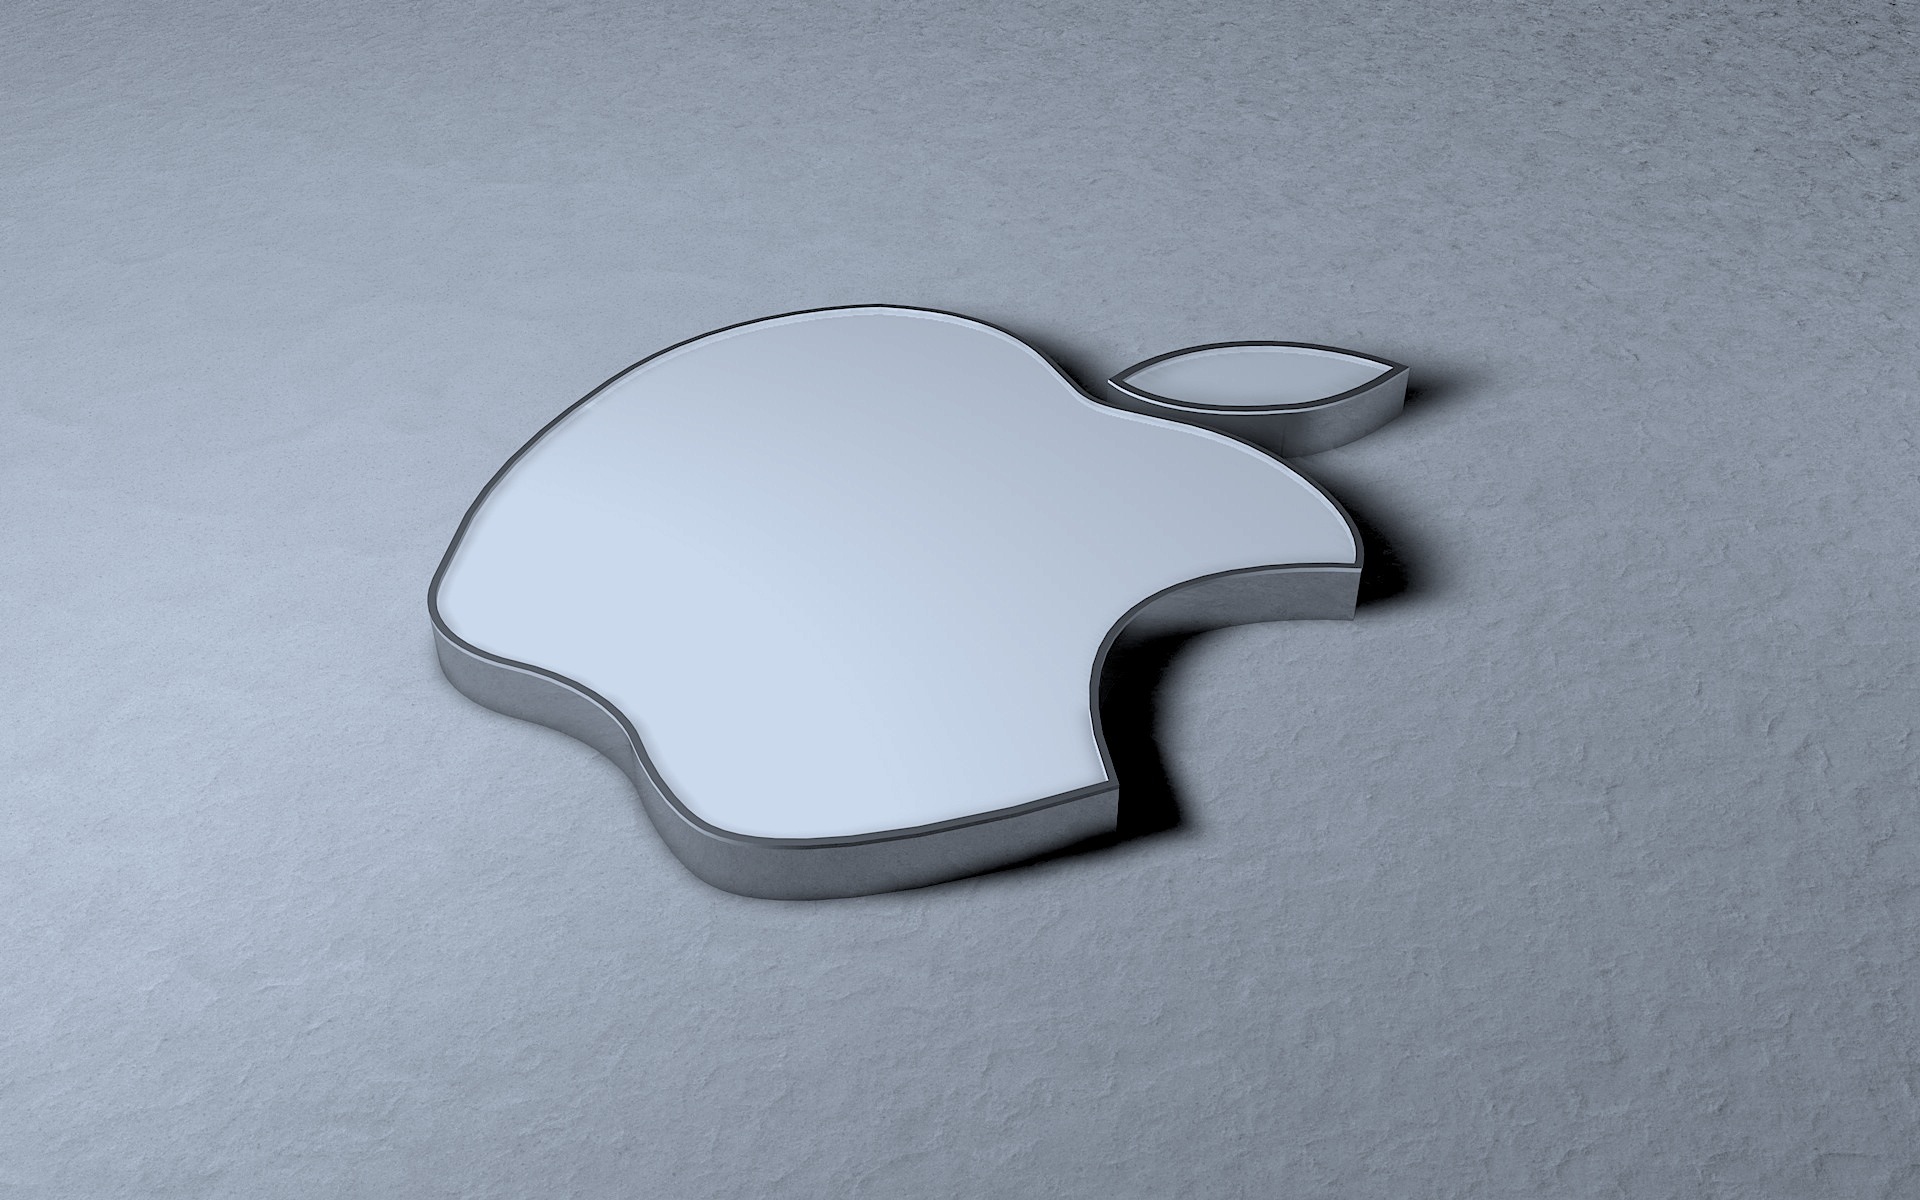 Apple Hd Wallpaper Mac Apple Hd Wallpaper - Apple - HD Wallpaper 